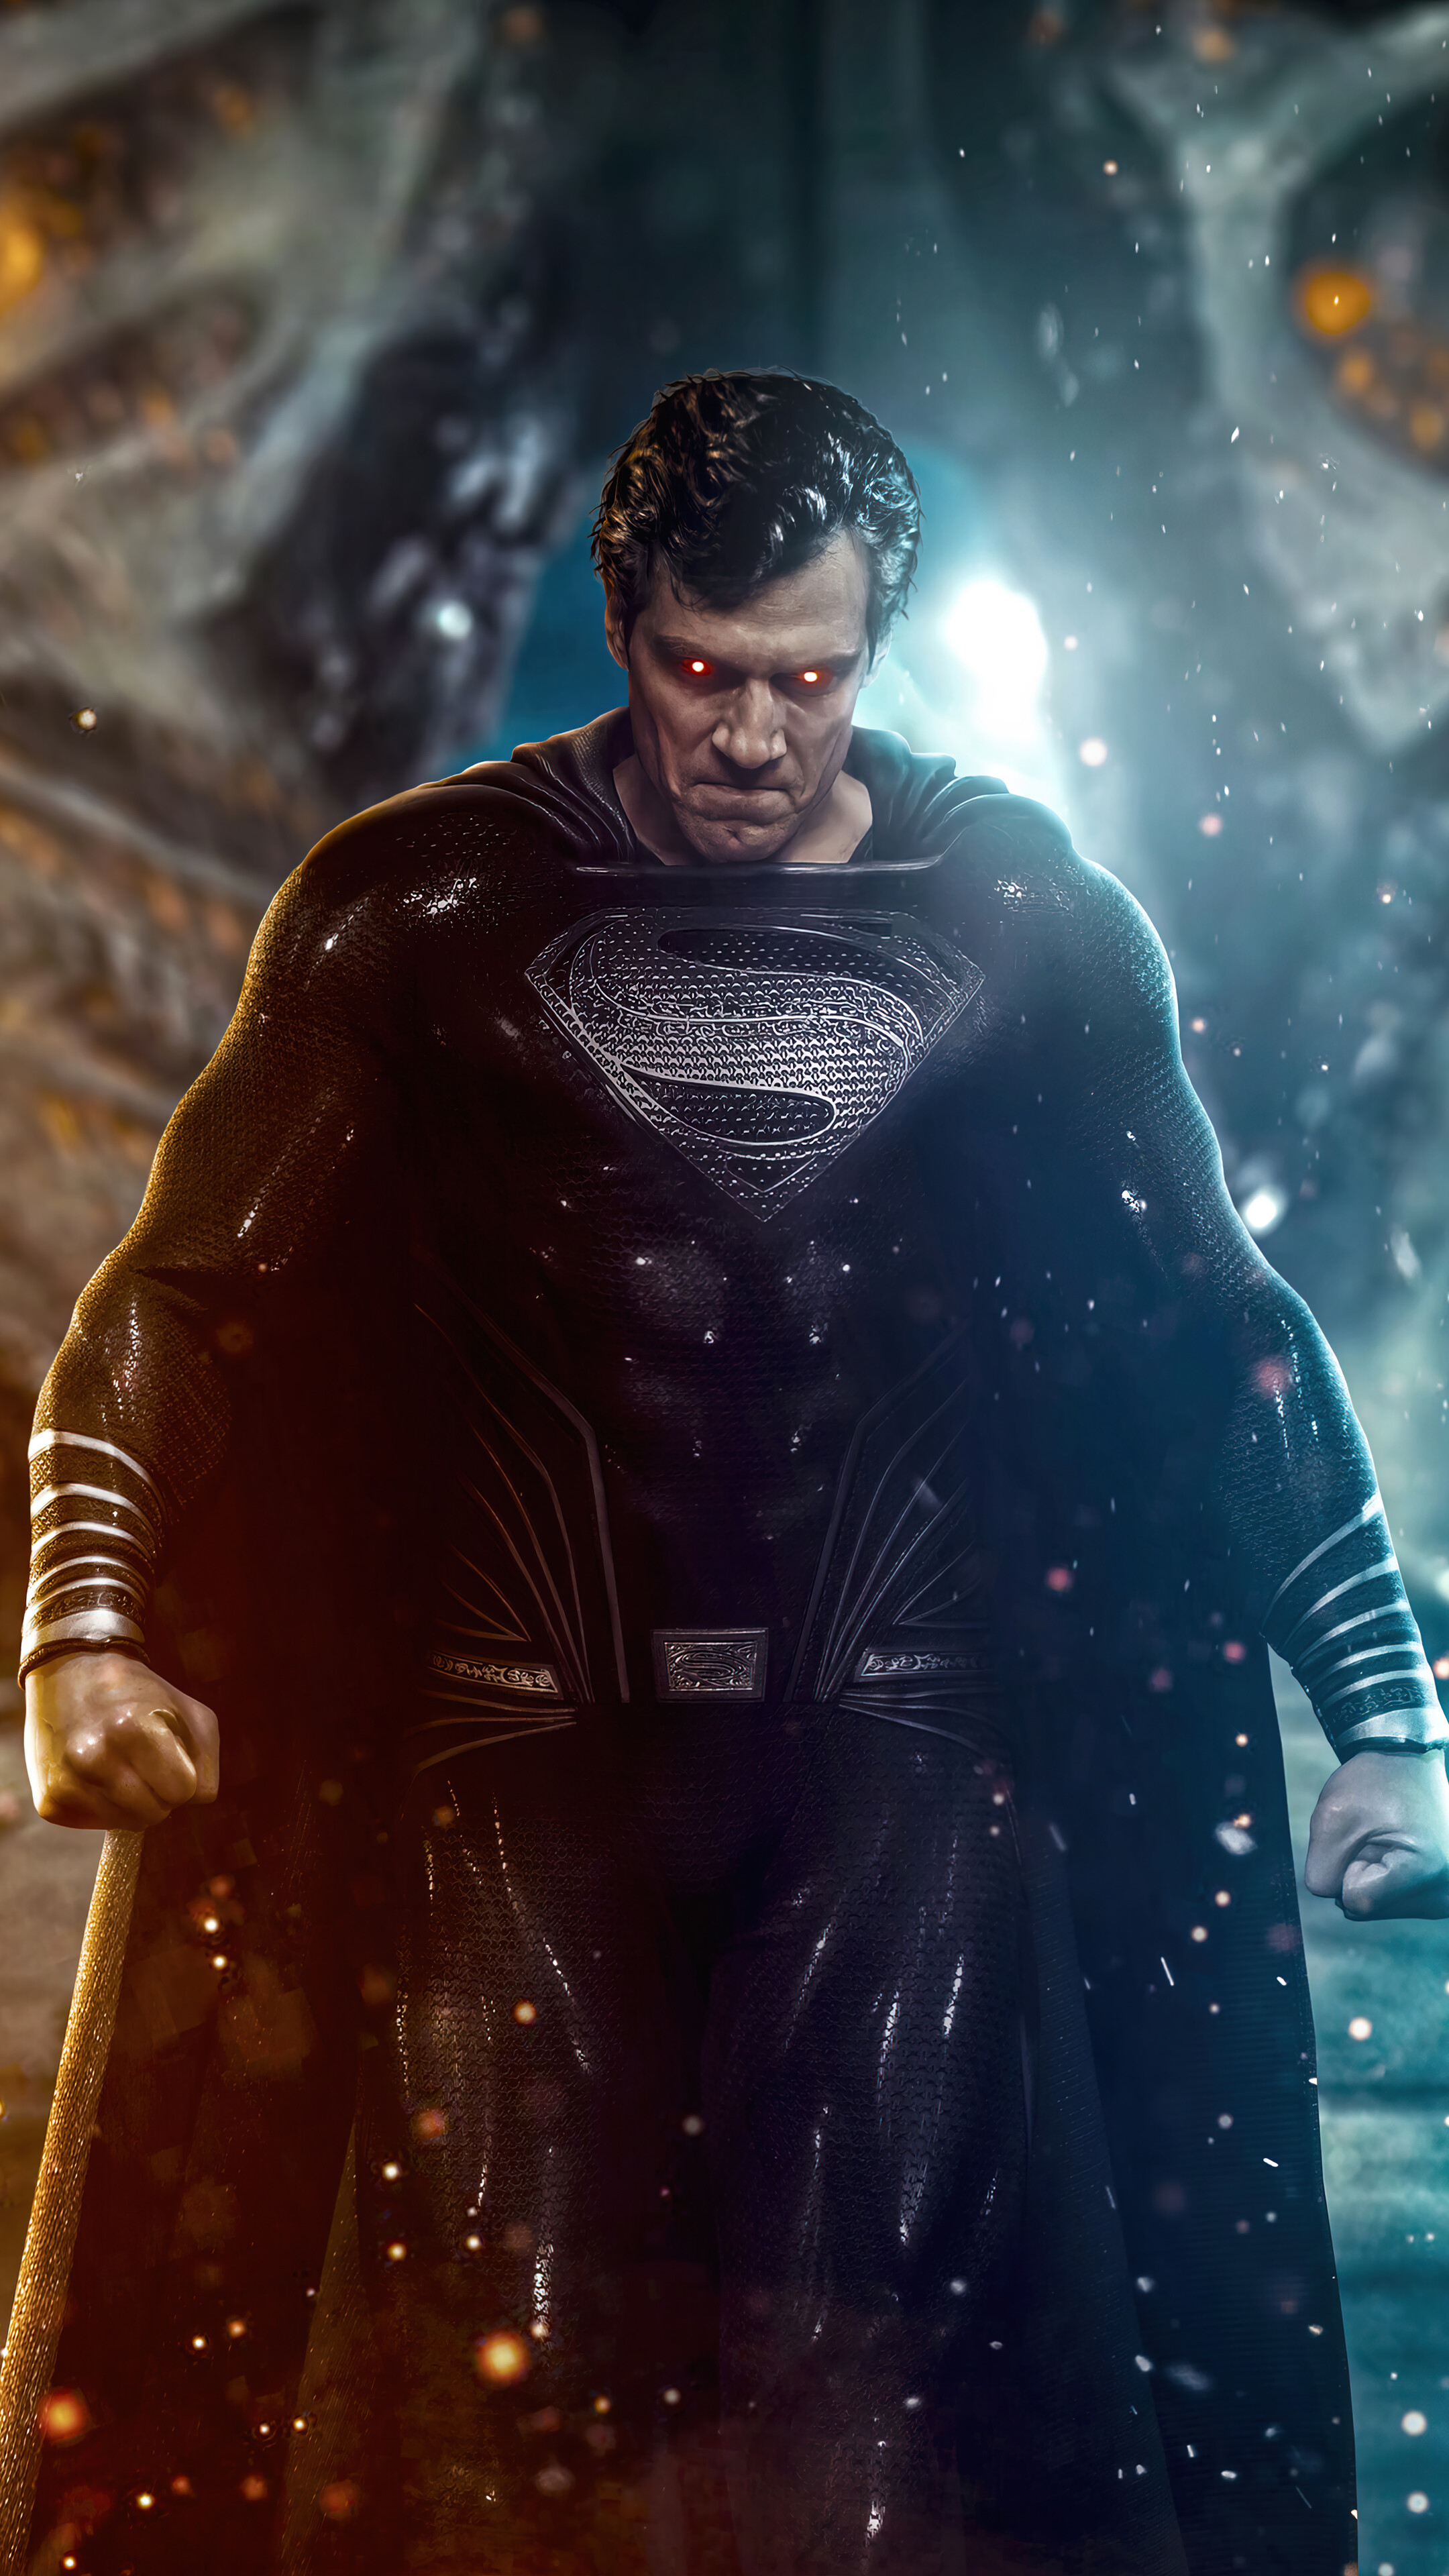 Superman Black Suit Justice League Snyder Cut Wallpaper 4k